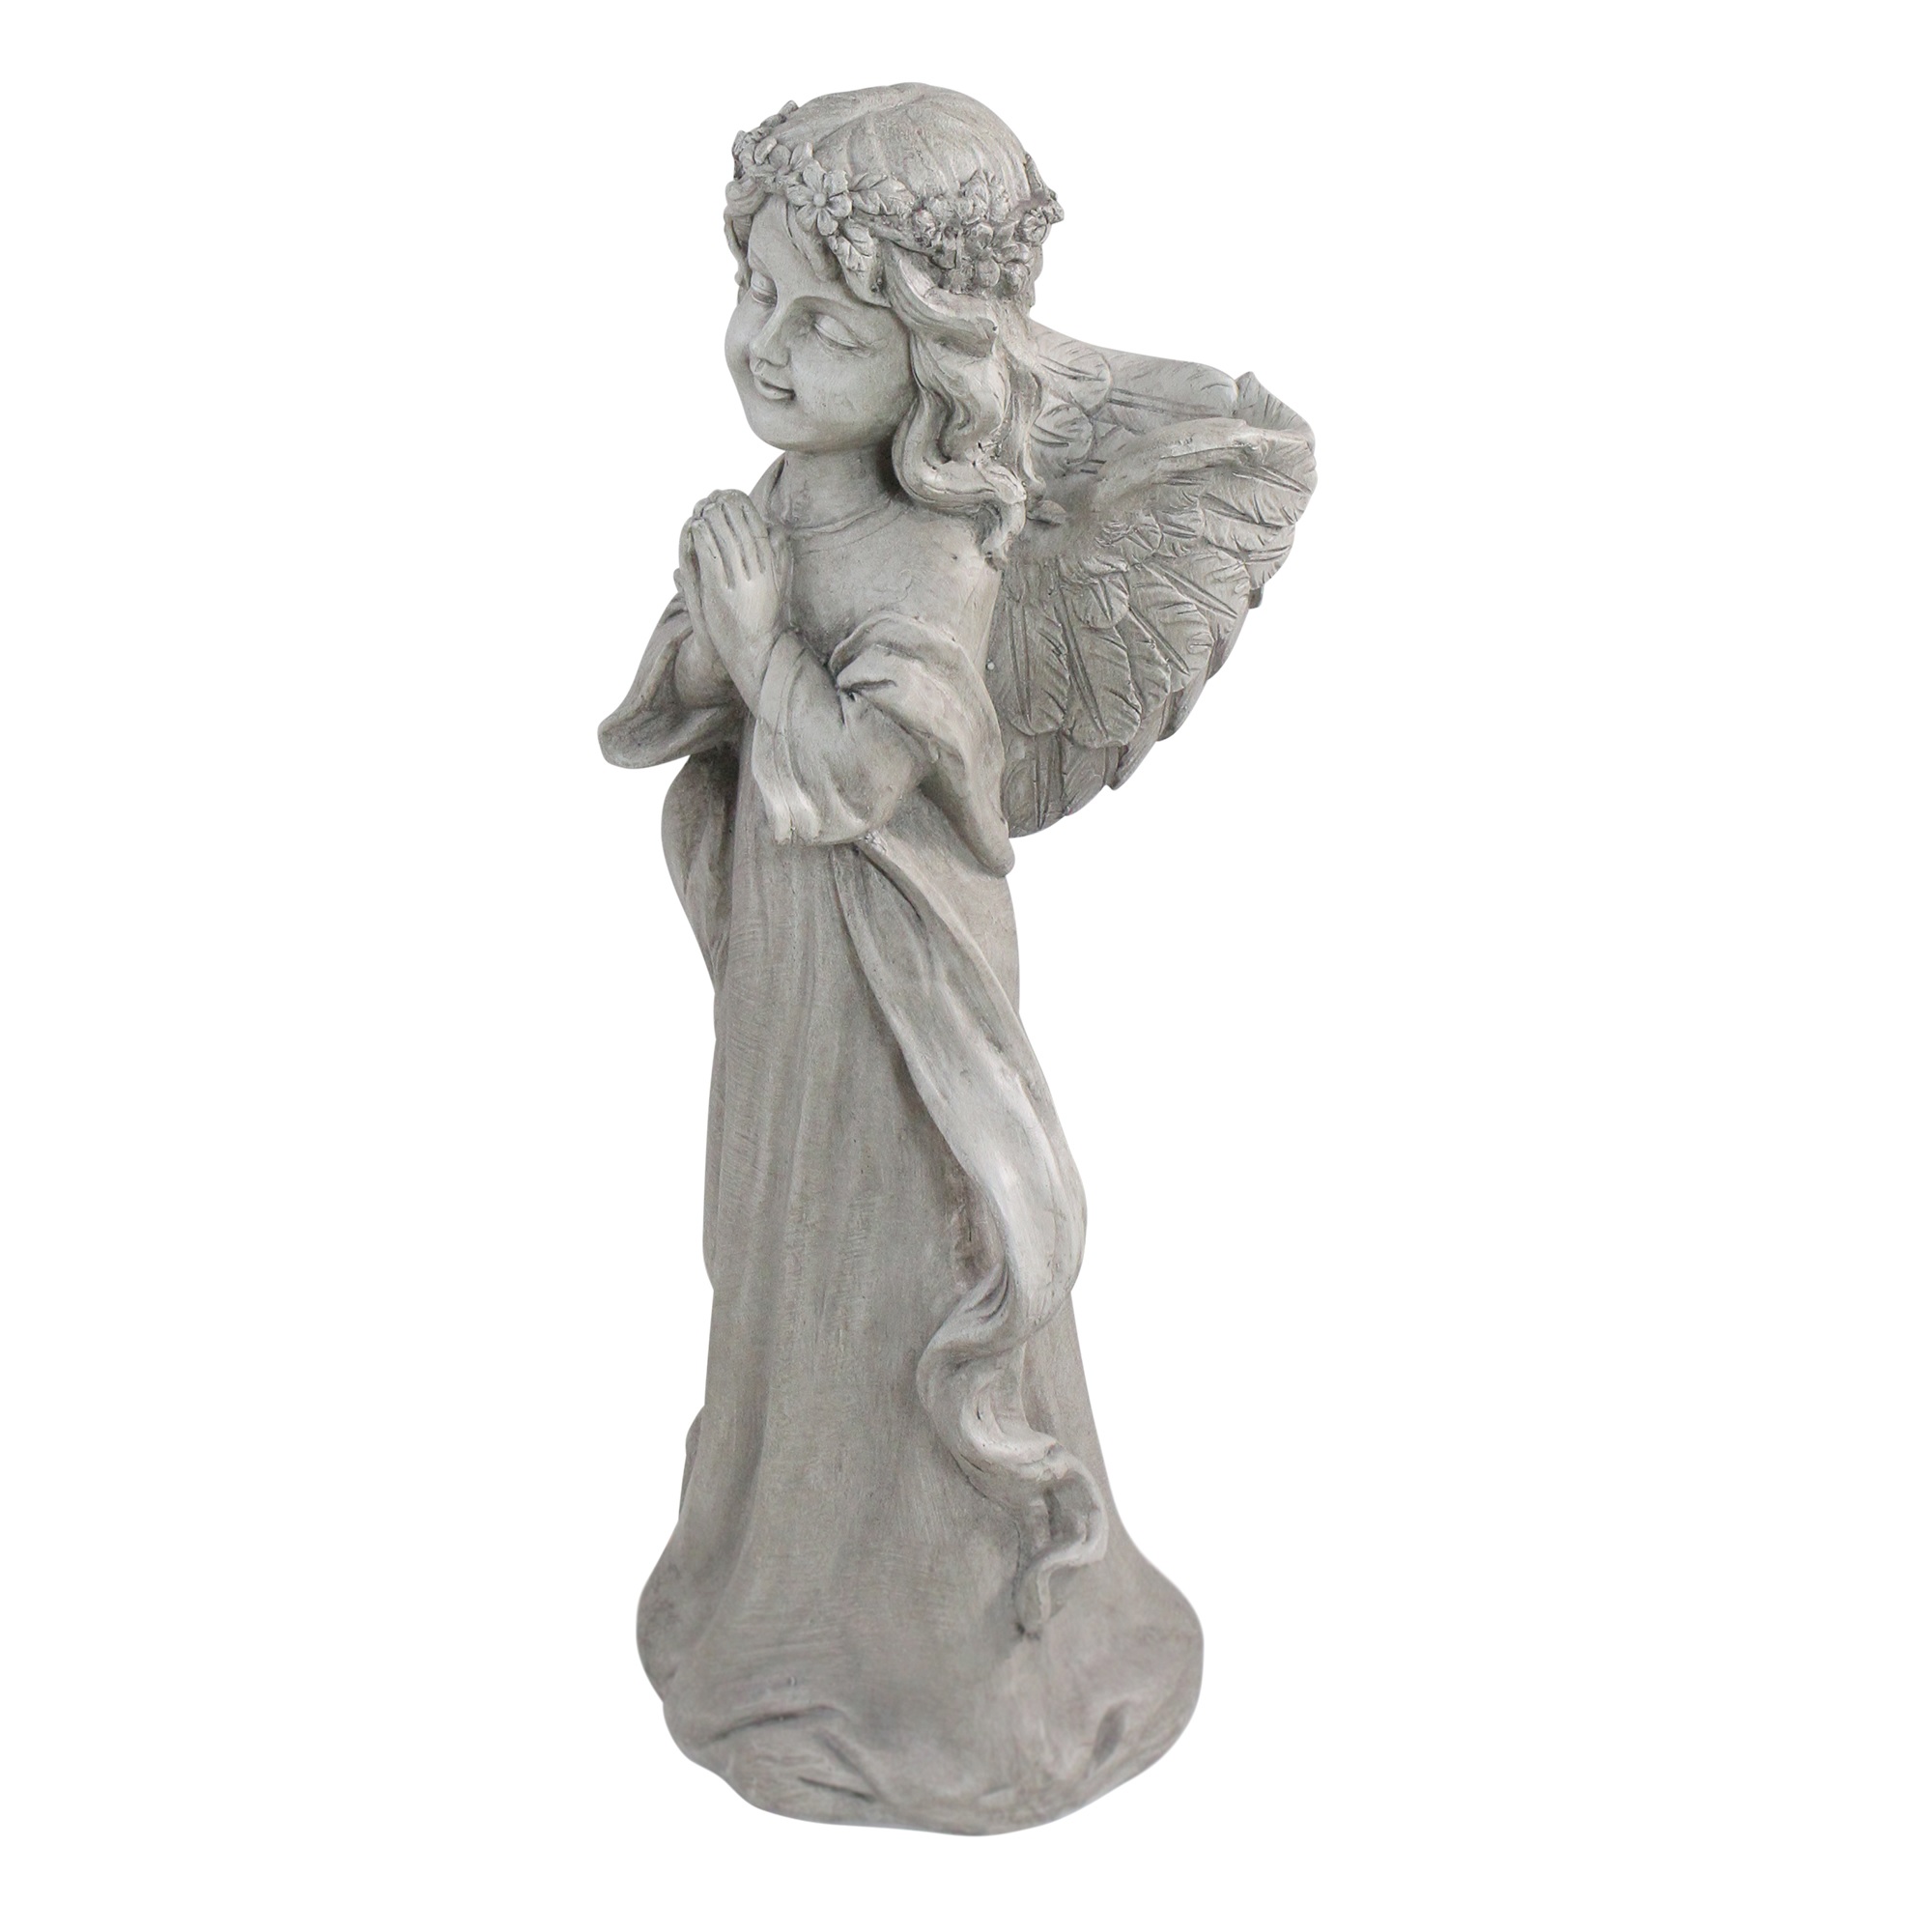 Northlight 21" Angel Standing in Prayer Outdoor Garden Planter Statue - image 2 of 3